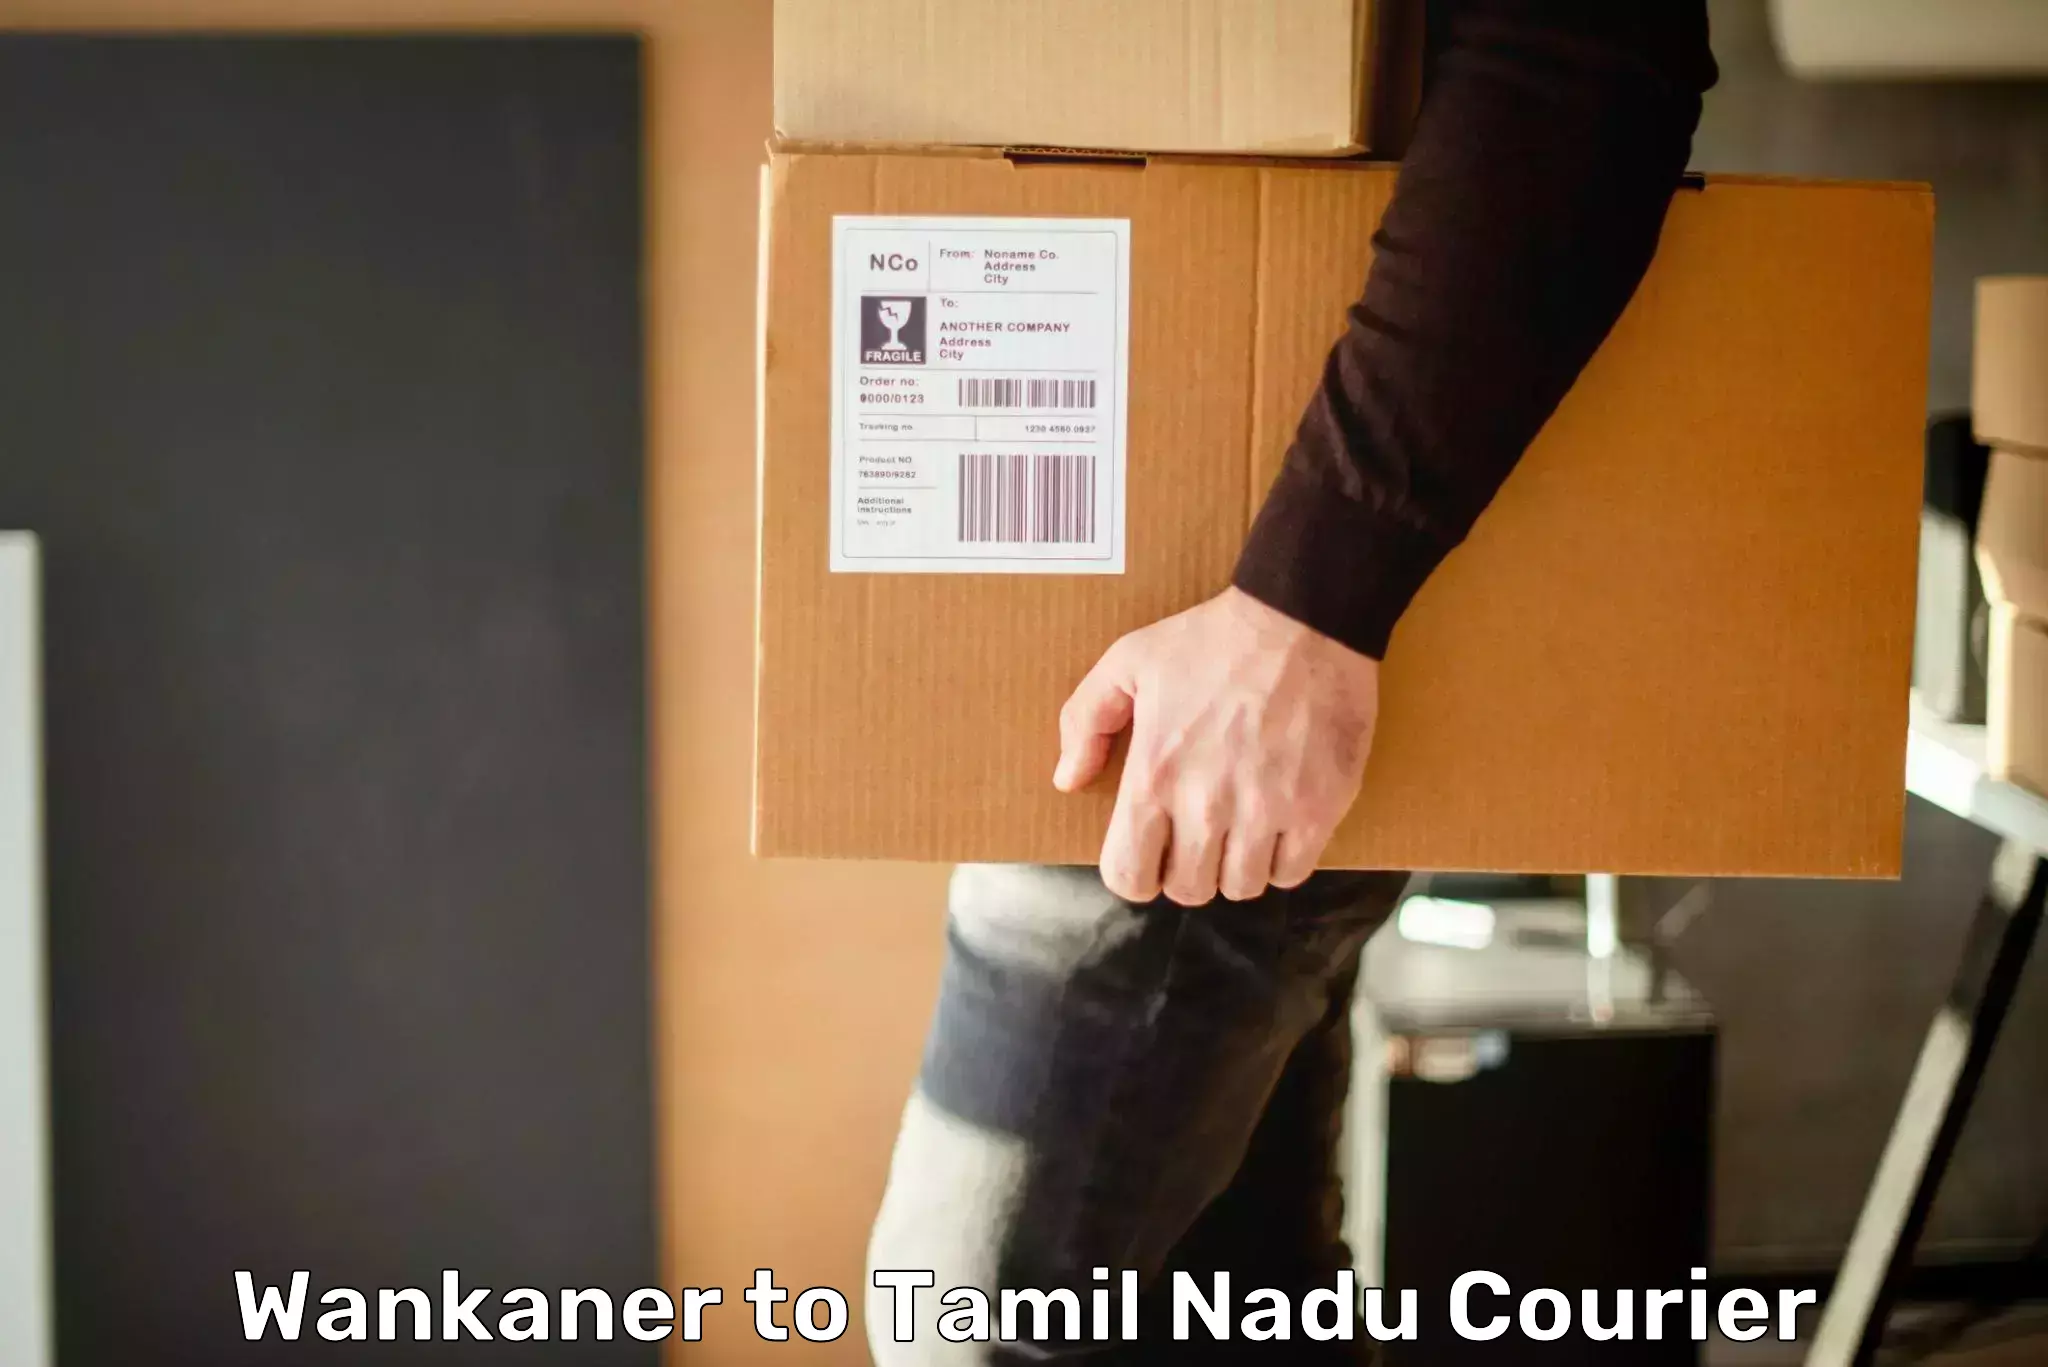 Global courier networks Wankaner to Coonoor